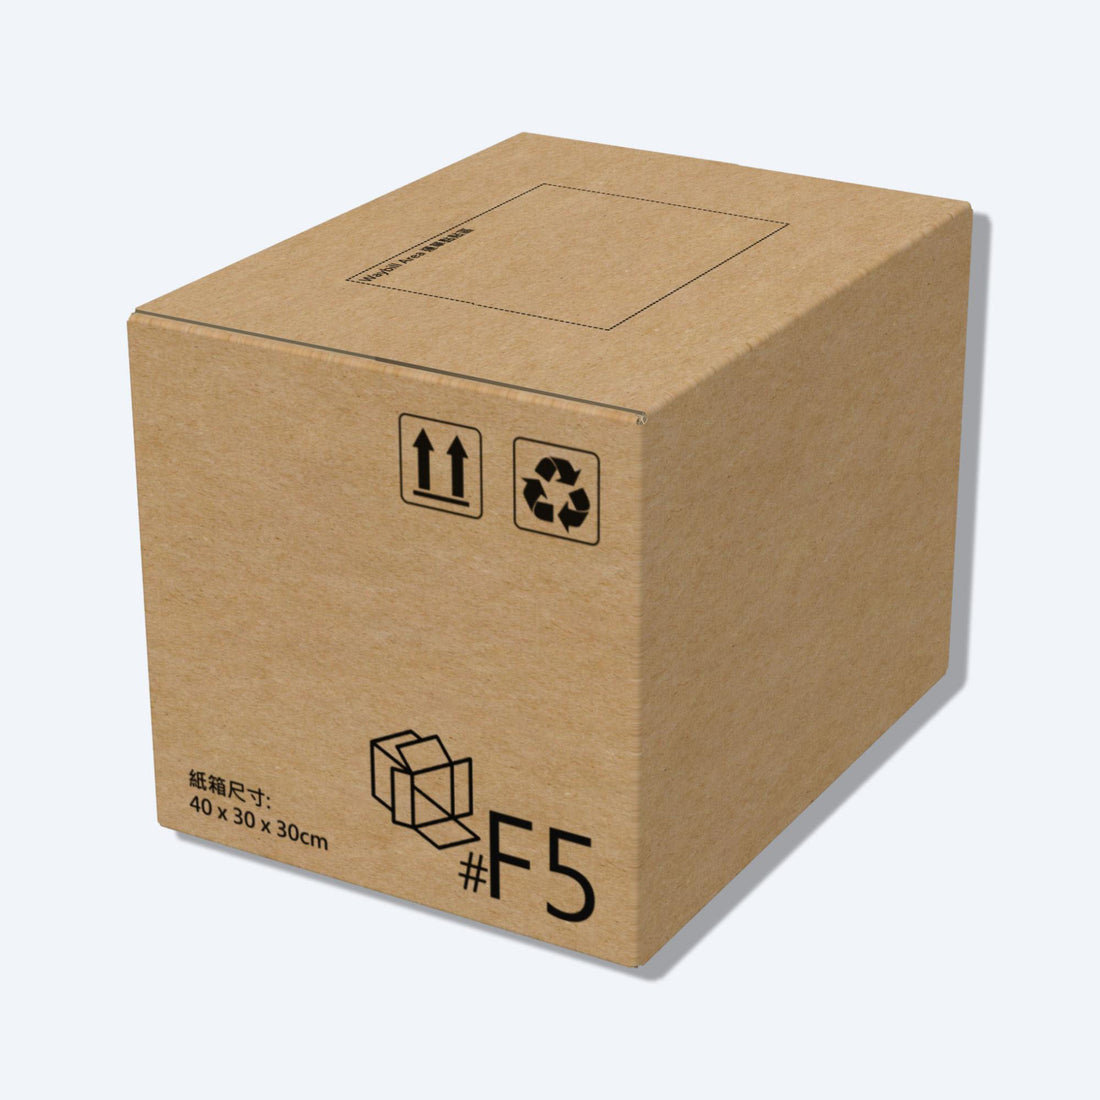 堅固的啡色順豐速運F5尺寸紙箱正面圖，這款快遞紙箱專為順豐速運設計。